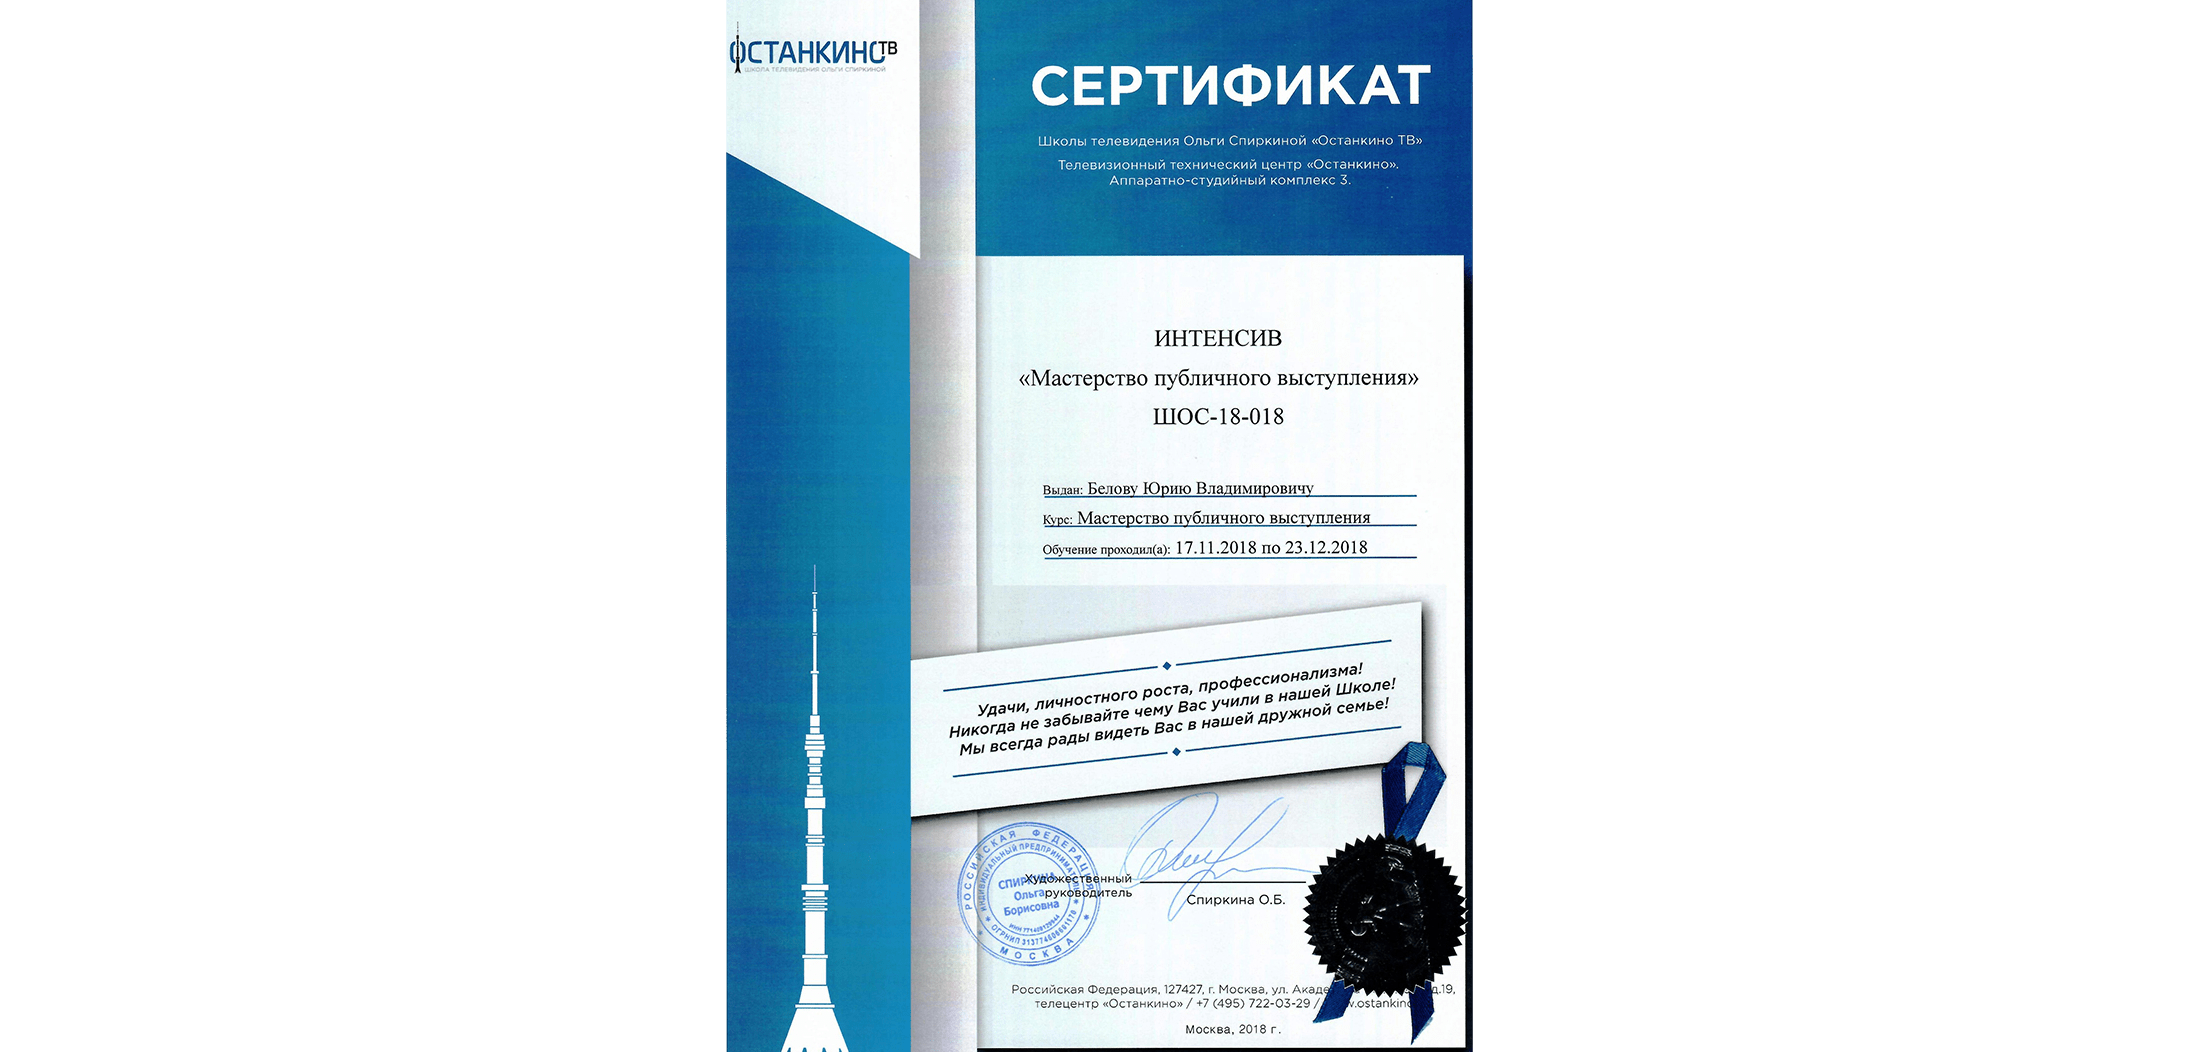 Сертификат школы телевидения Останкино о прохождении тренинга